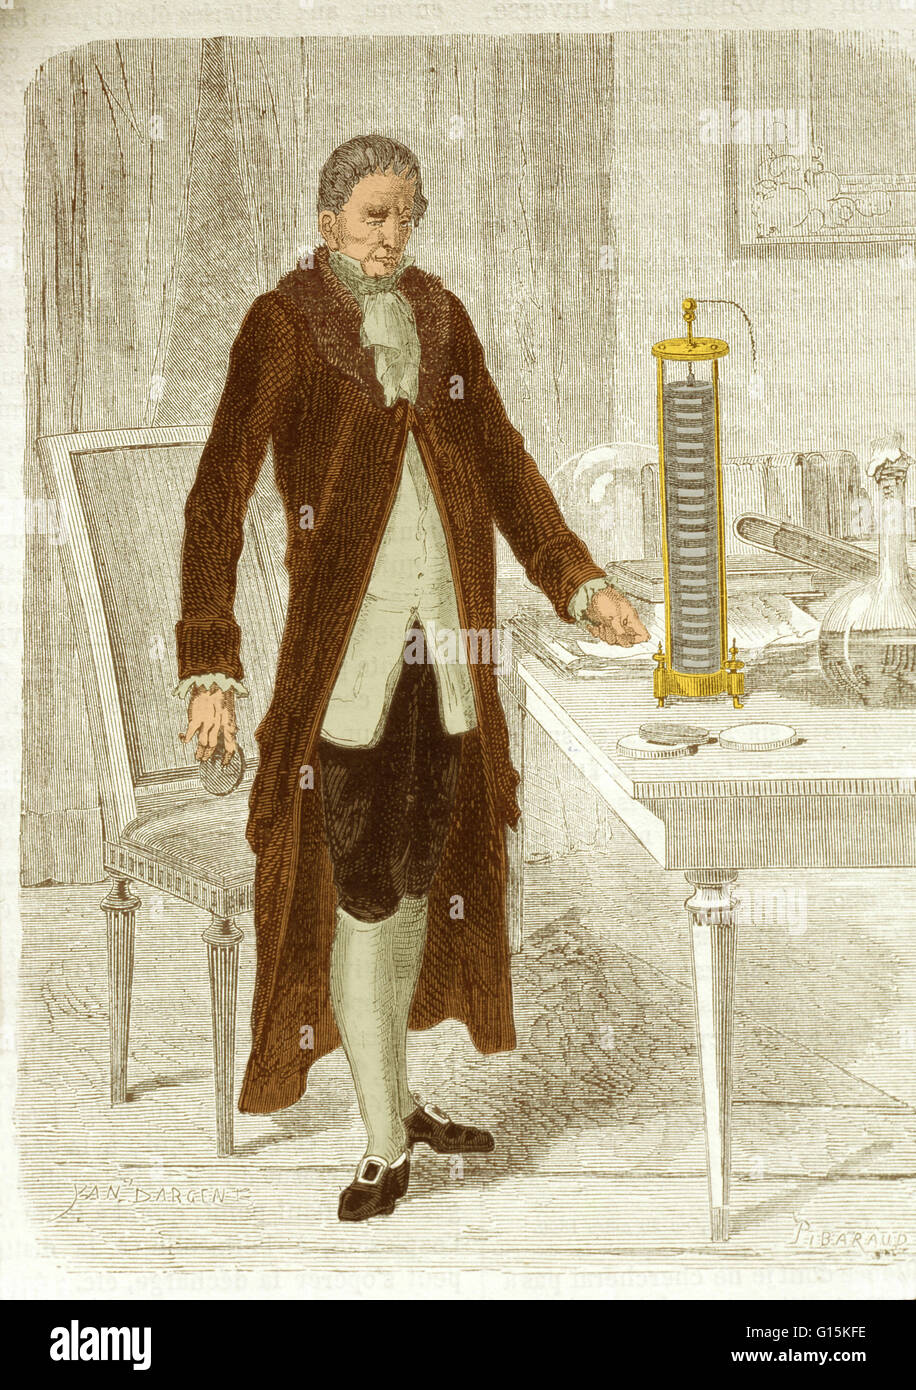 Volta posiert mit seiner Batterie neu erfunden oder "Voltaic Stapel". Alessandro Volta (1745-1827) war ein italienischer Physiker. 1786 wurde er nachdem er die Arbeit von Galvani Strom interessiert. Volta war das erste zu zeigen, dass eine elektrische aktuelle flo Stockfoto